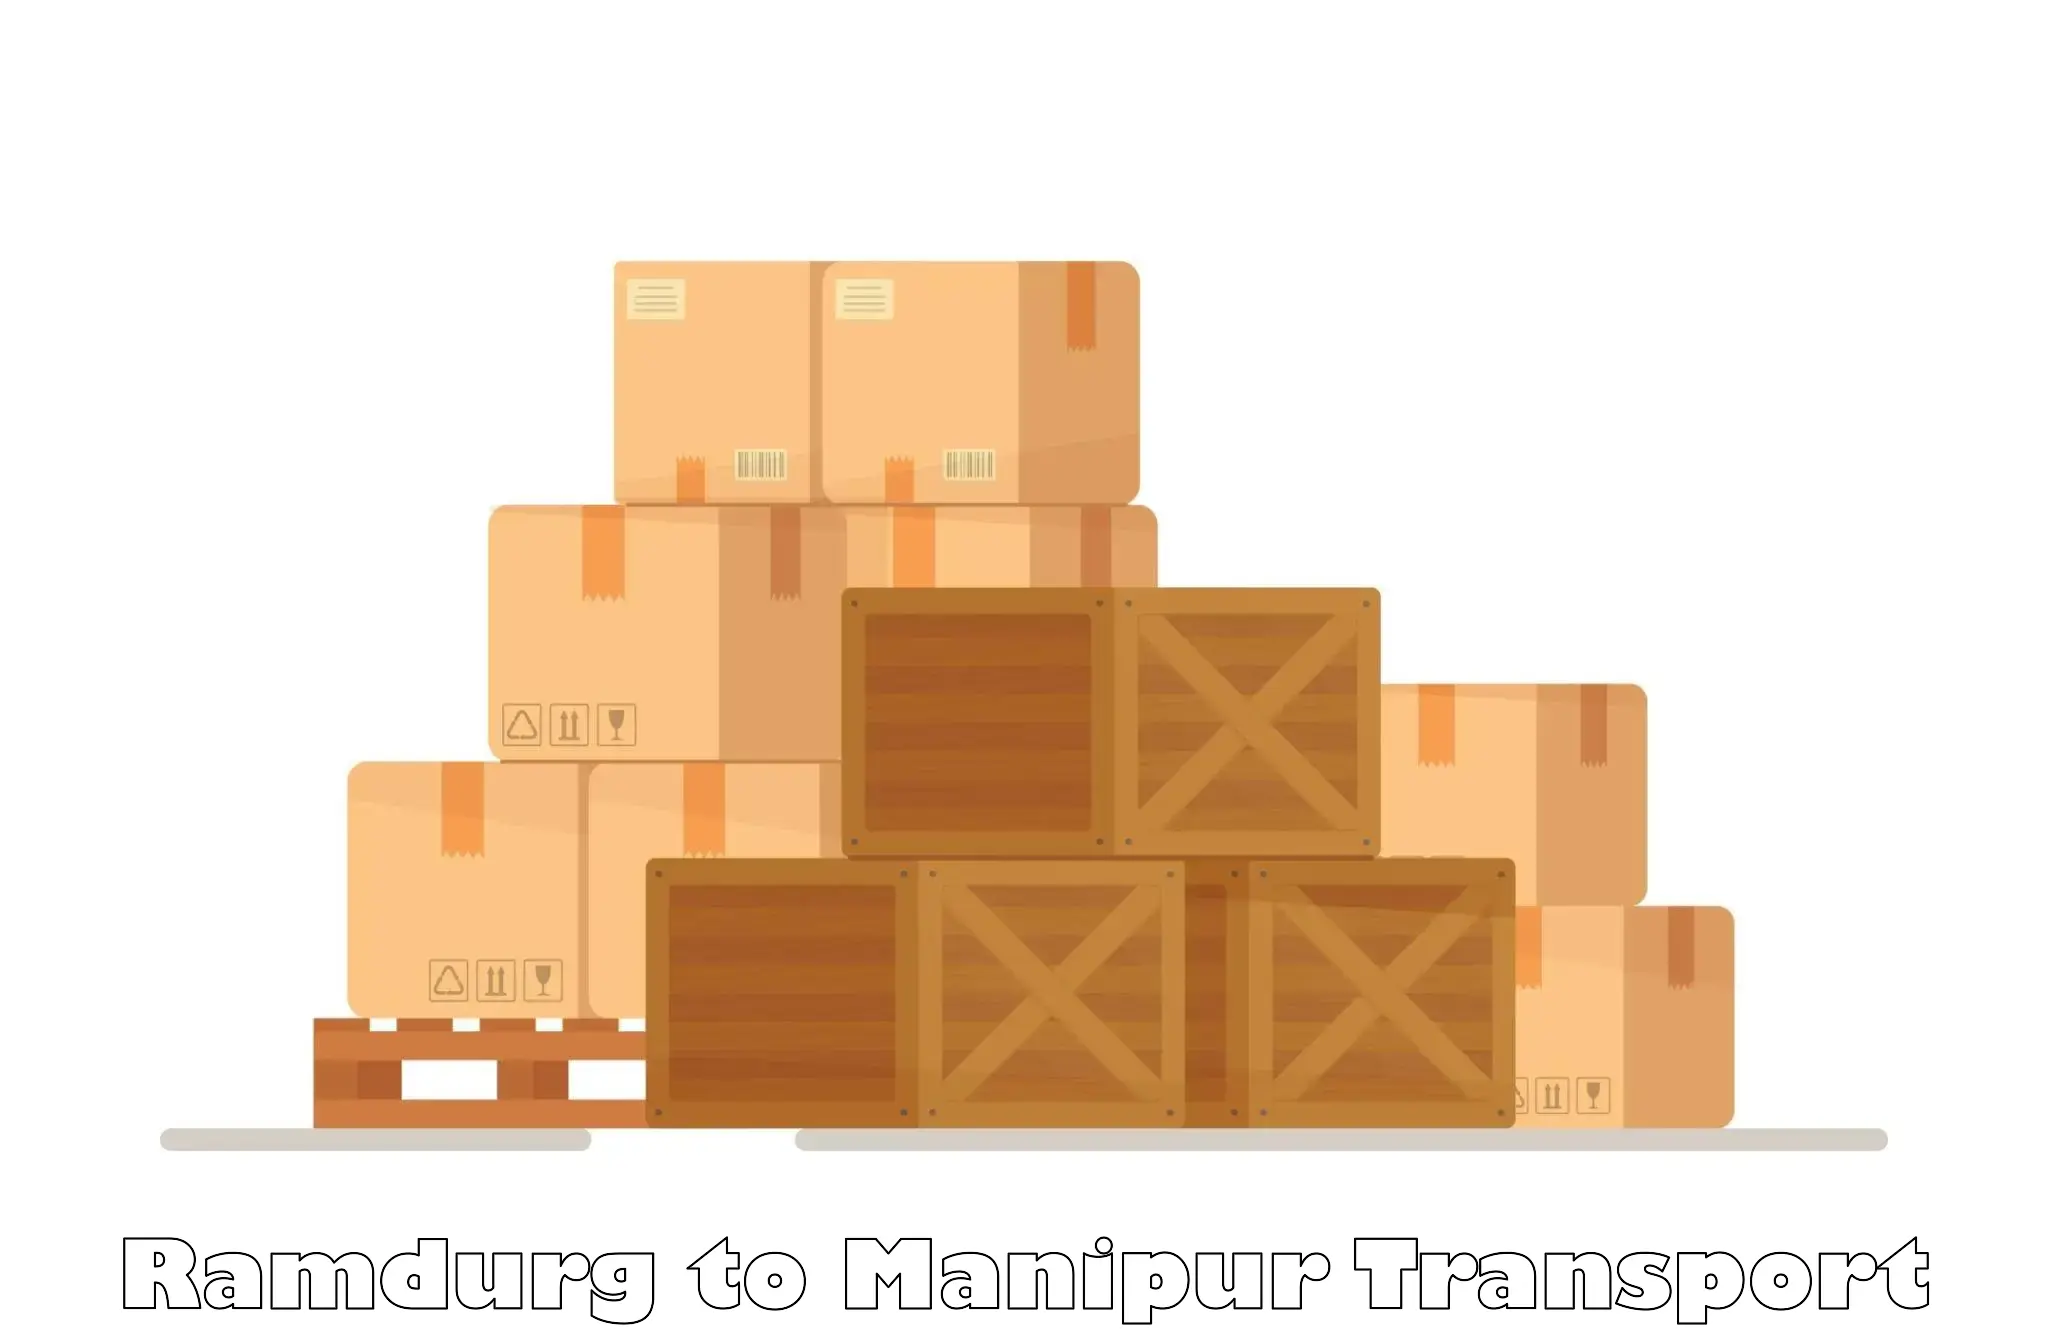 Transport services Ramdurg to Manipur